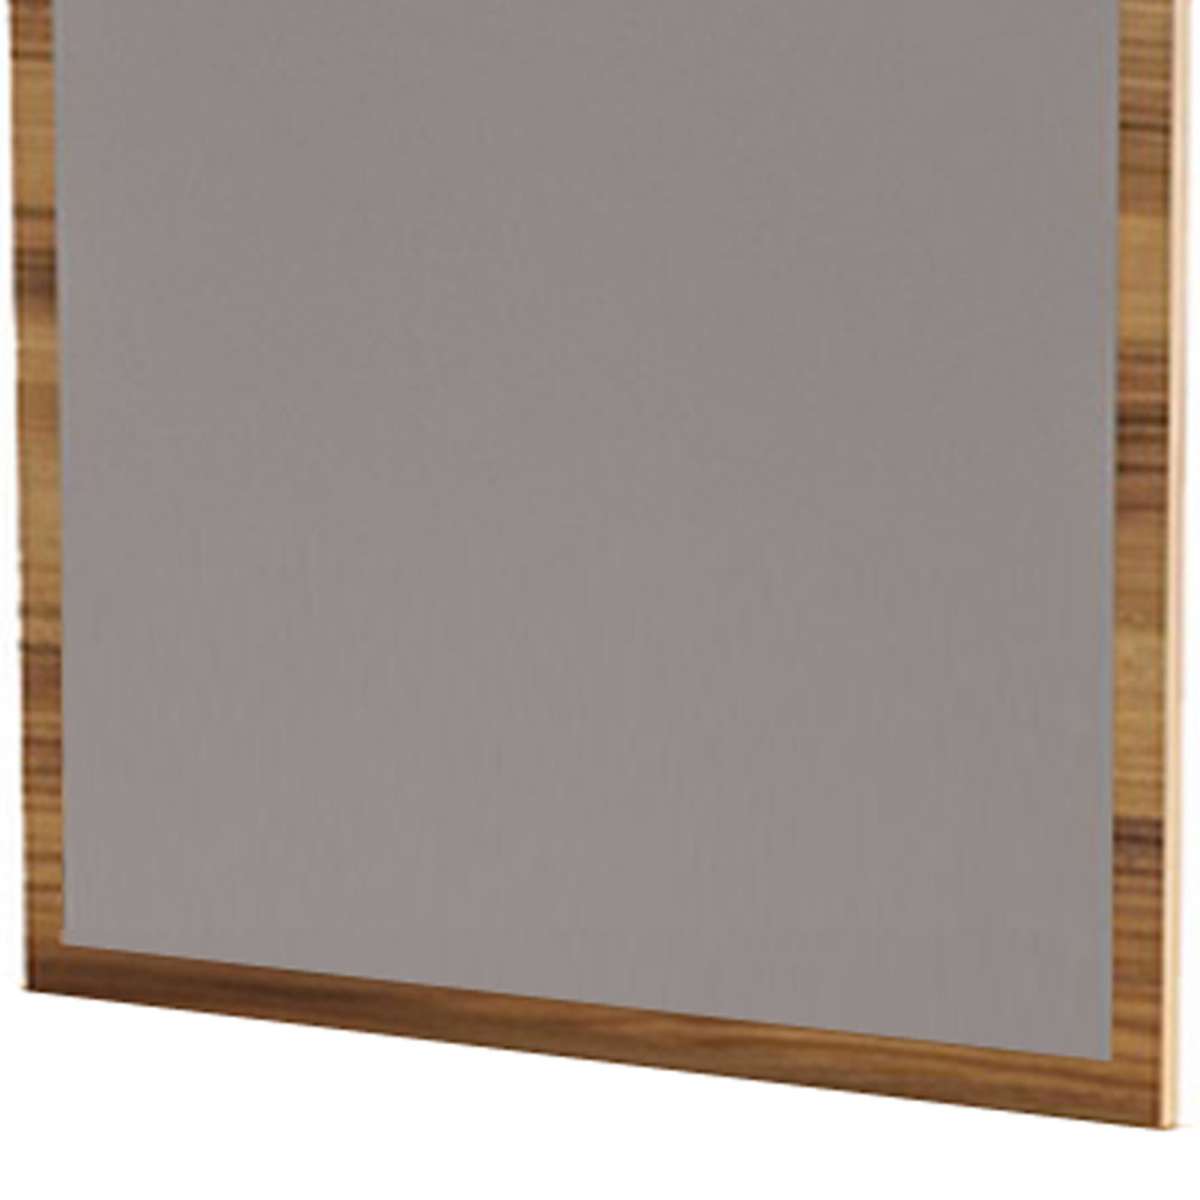 Rectangular Wooden Frame Mirror With Grain Details, Oak Brown By Benzara | Mirrors |  Modishstore  - 3